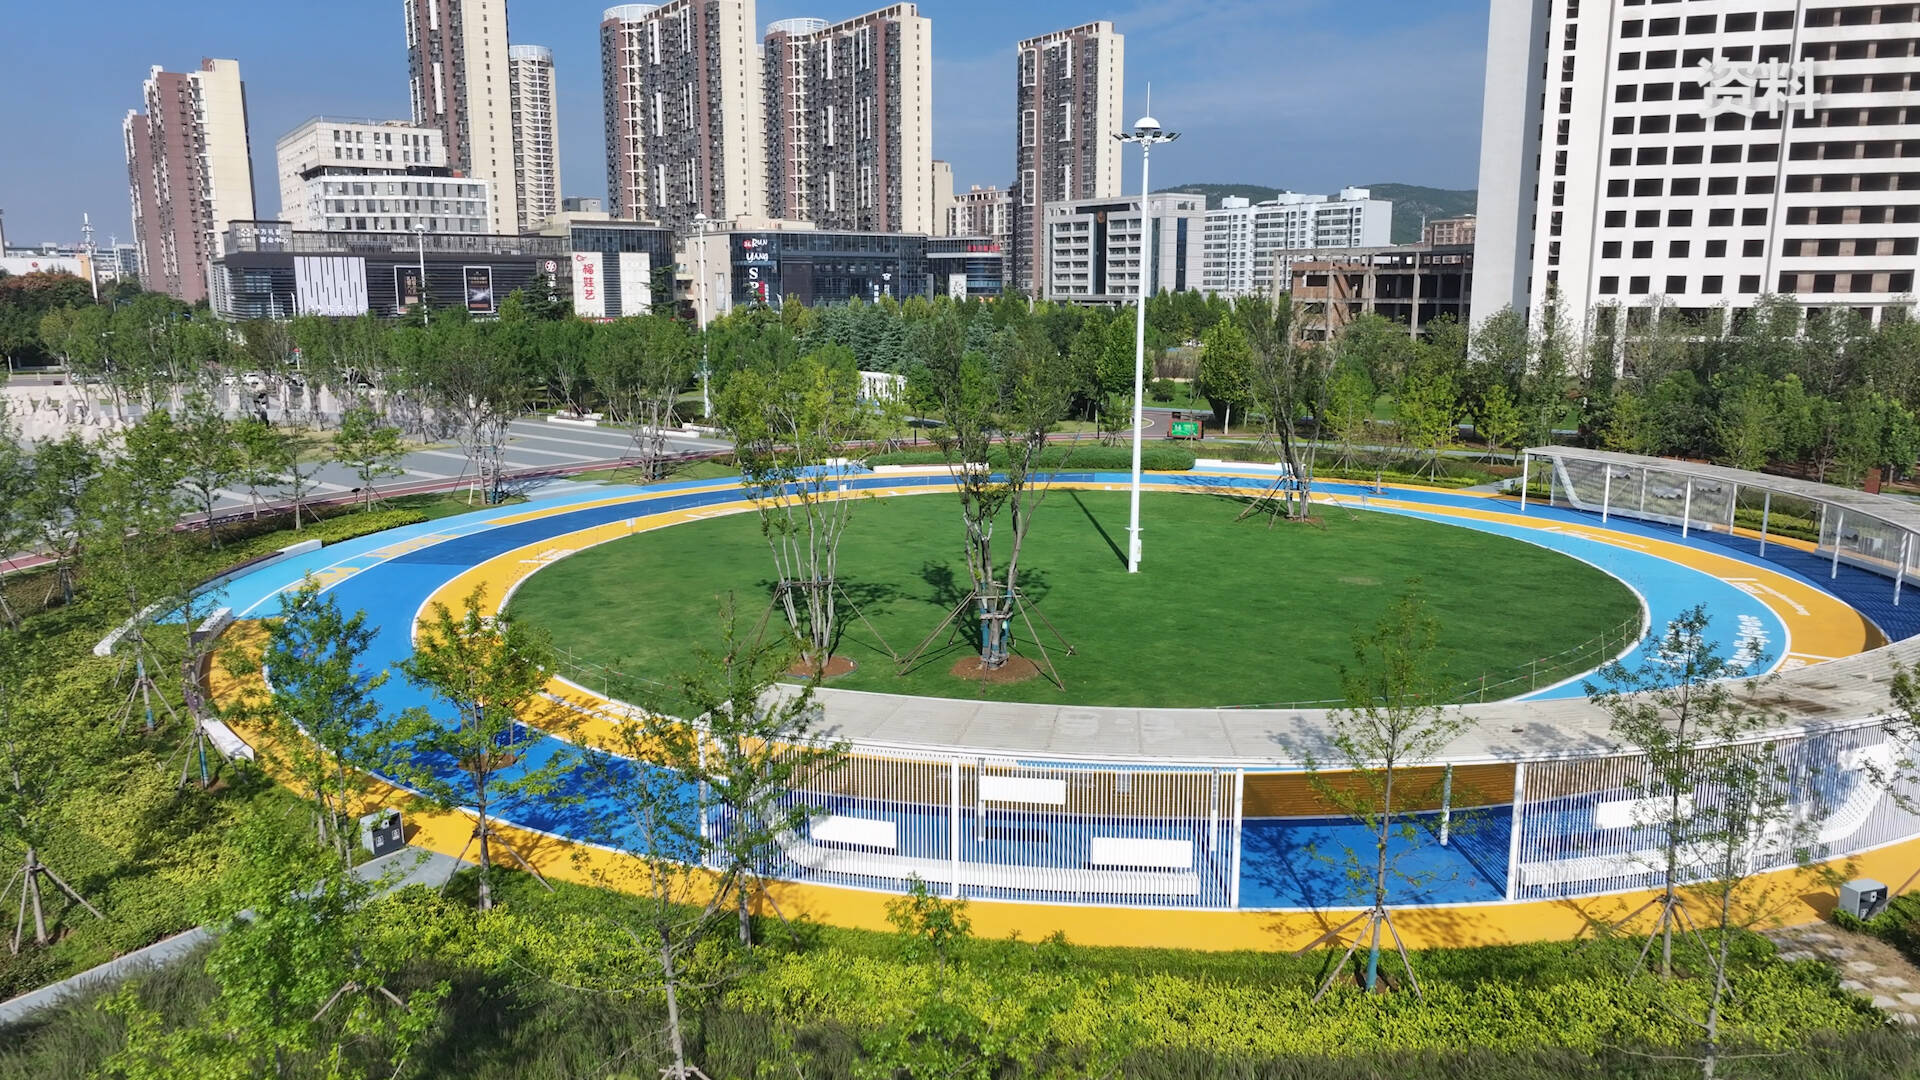 枣庄高新区高标准提升绿化颜值 口袋公园建设持续上新